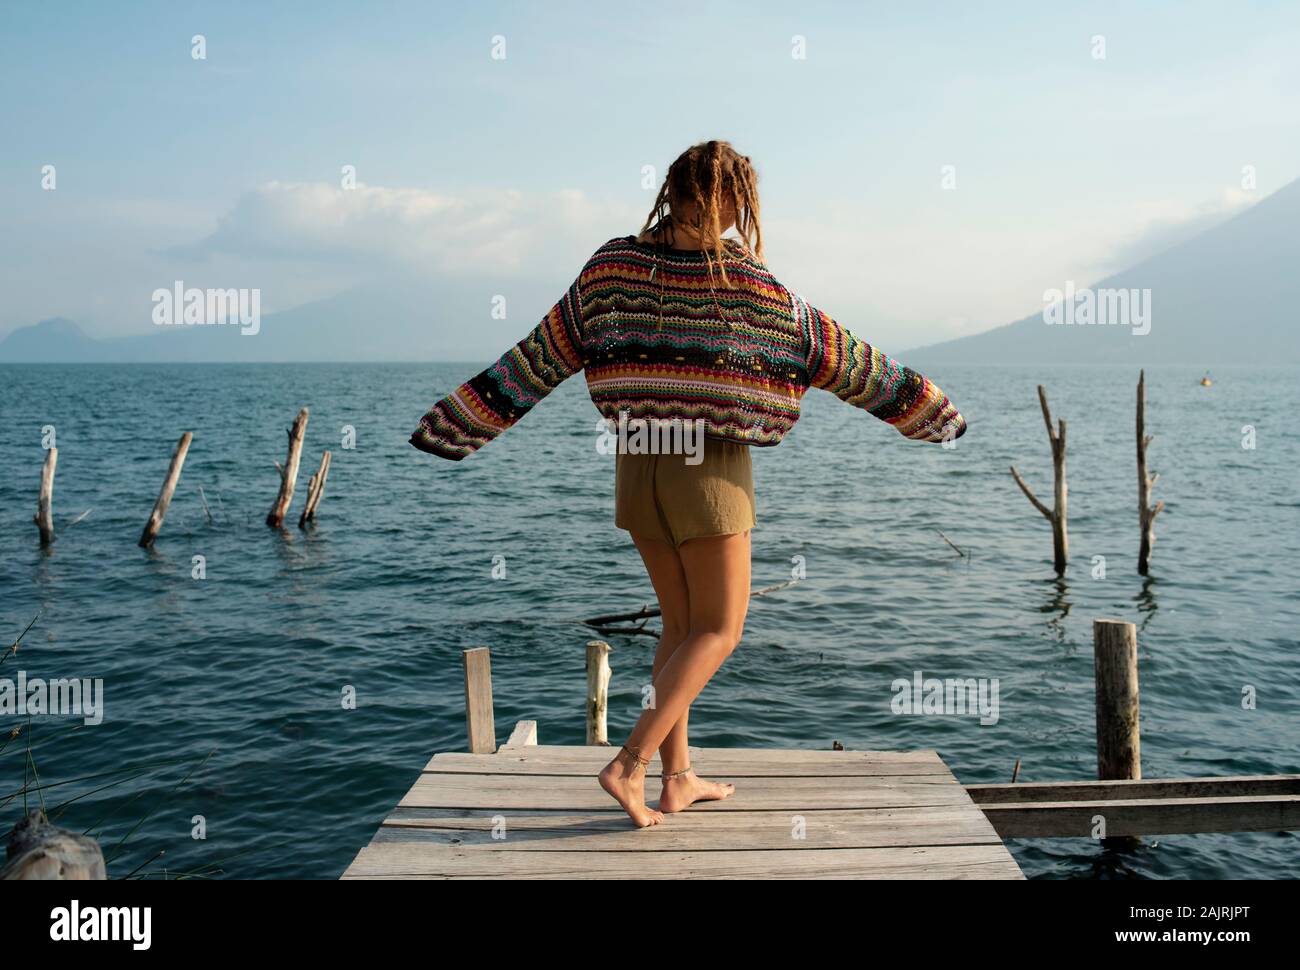 Vue arrière du Caucase attrayant femme dansant sur une jetée. Solo Outdoor lifestyle, vacances, voyages, loisirs concept. Lac Atitlan, Guatemala Banque D'Images